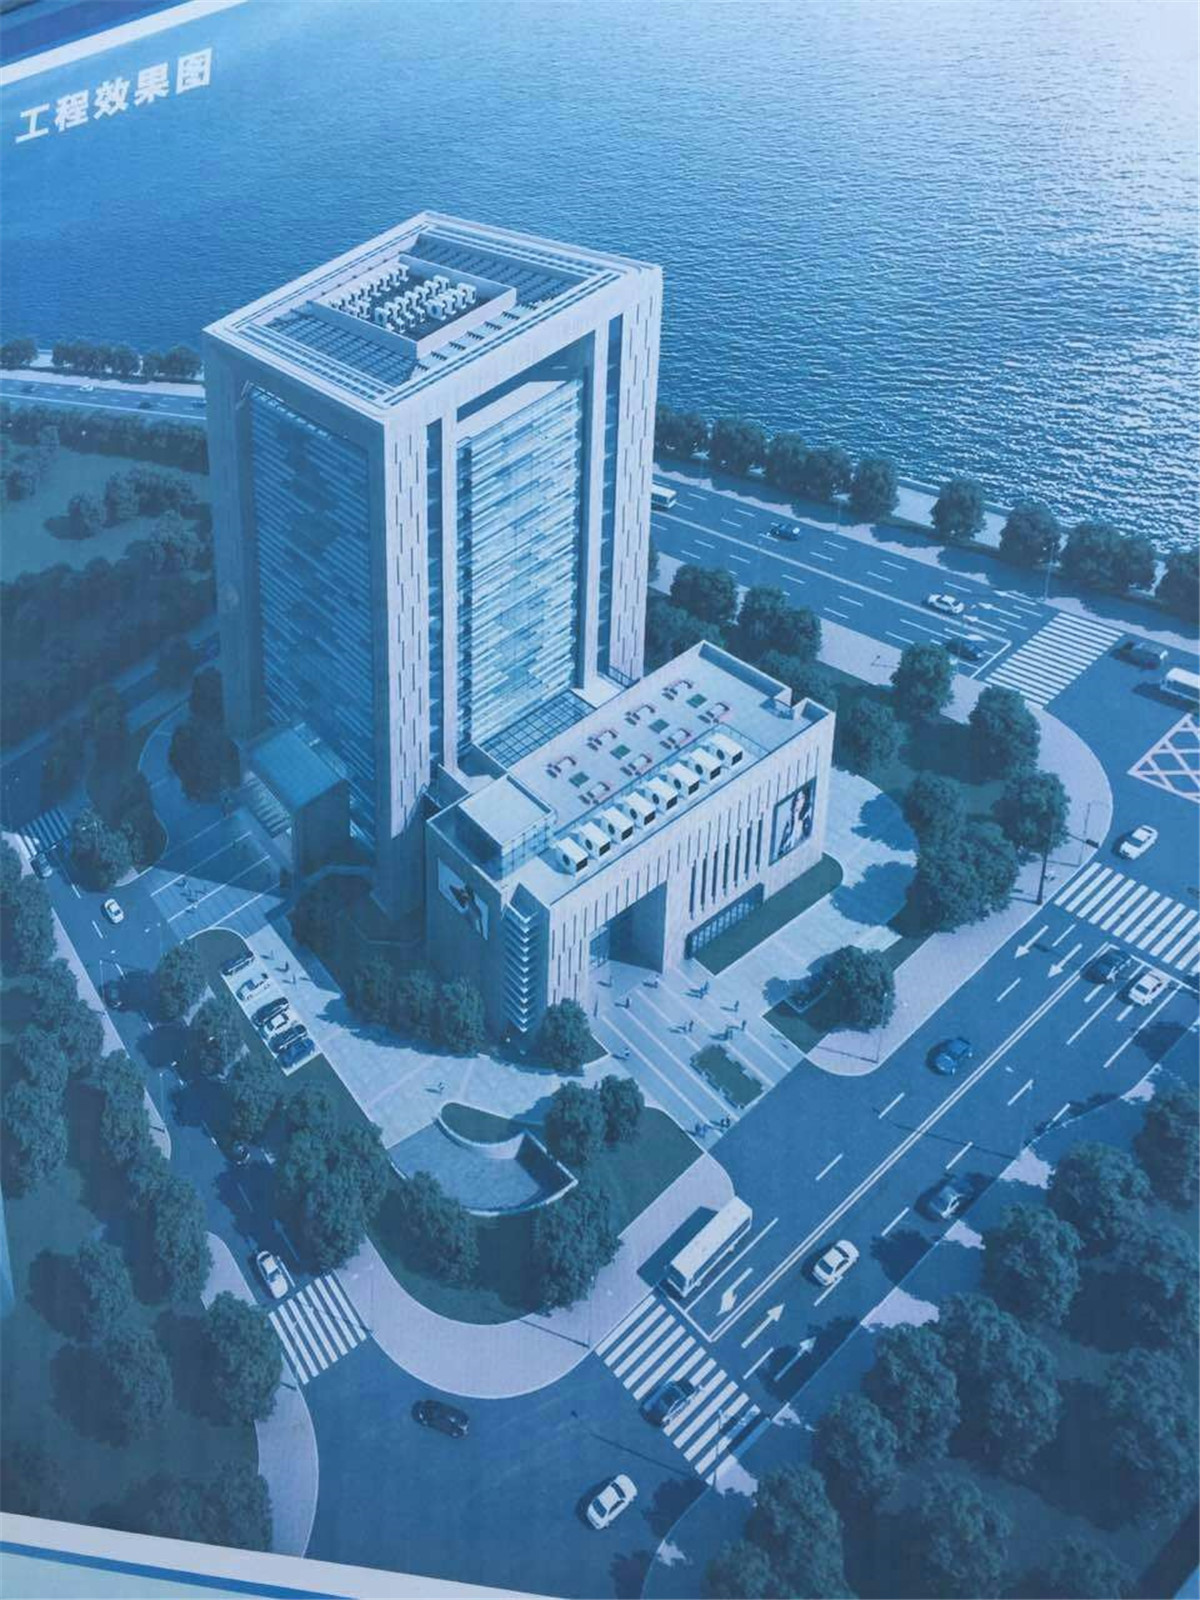 Wenzhou Financial Service Center